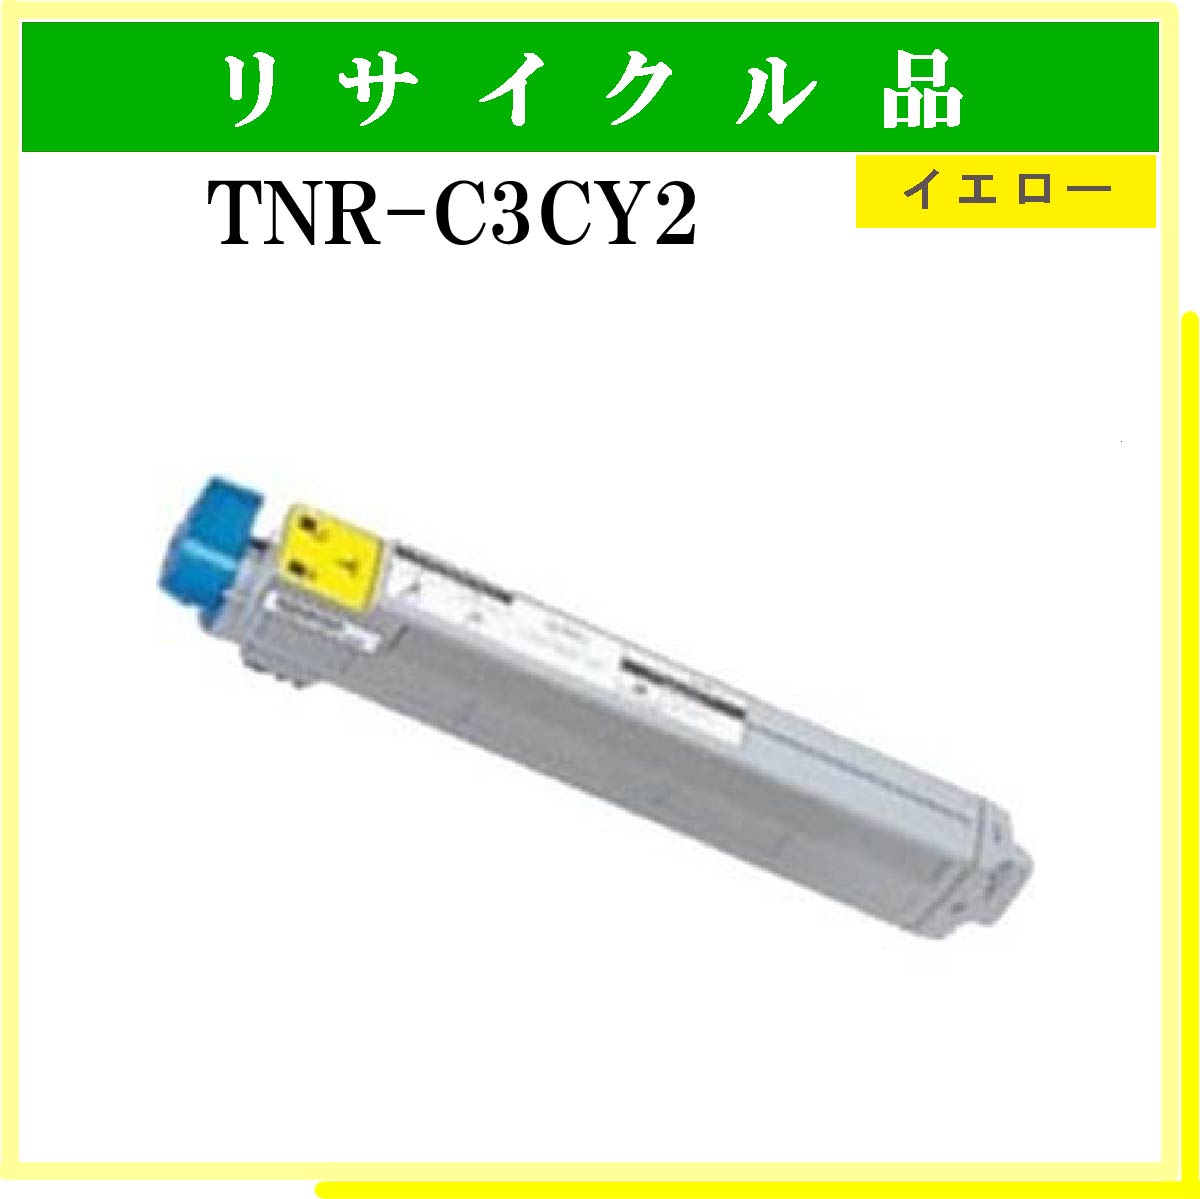 TNR-C3CY2